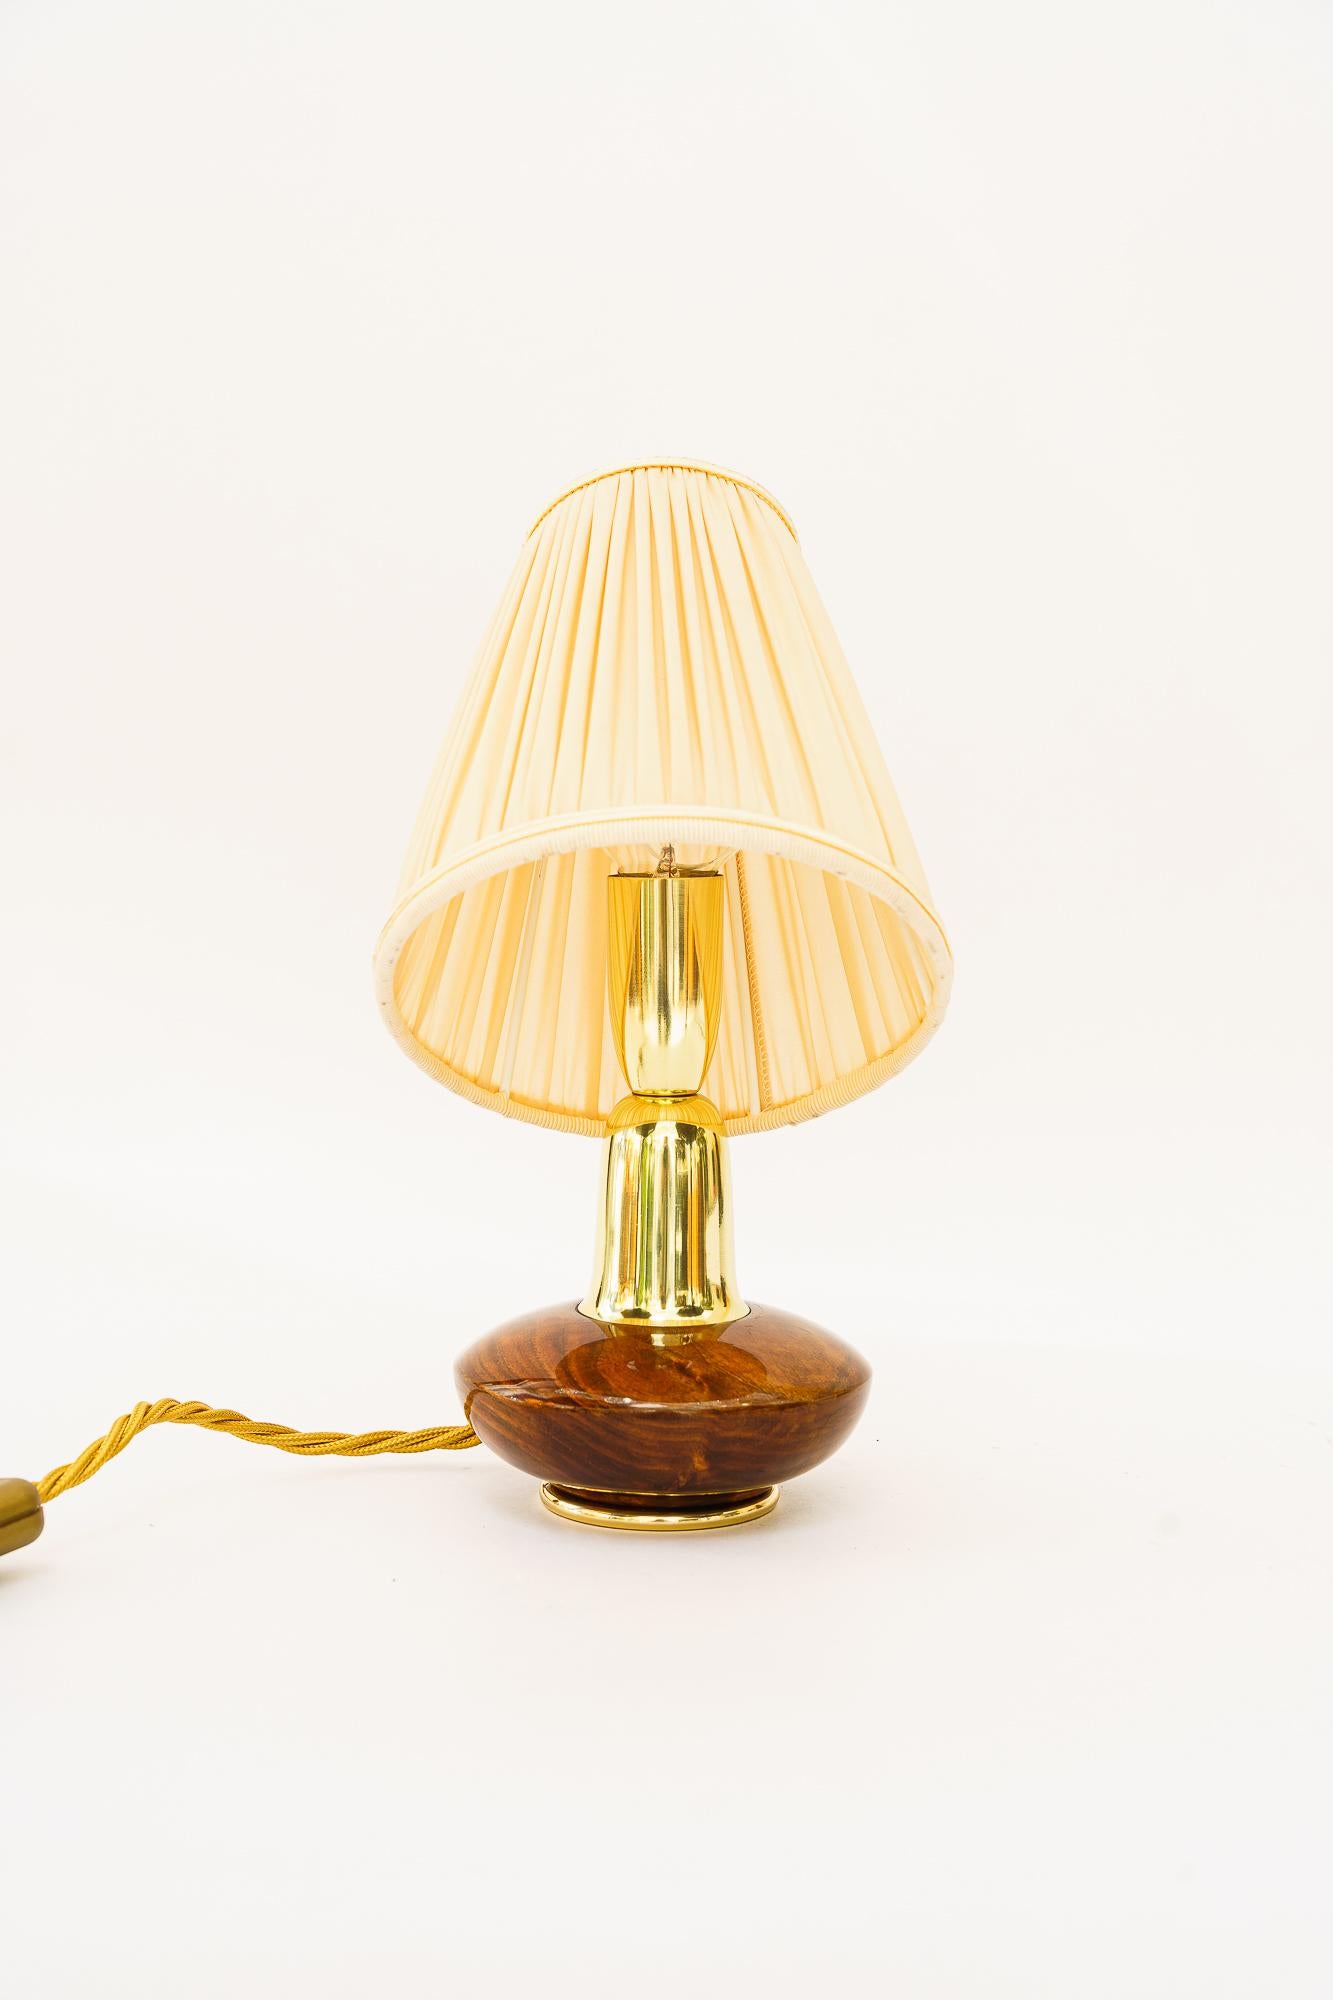 Petite lampe de table en bois Rupert Nikoll avec abat-jour en tissu vers 1950
Polis et émaillés au four
L'abat-jour en tissu est remplacé (neuf).
Modèle rare
